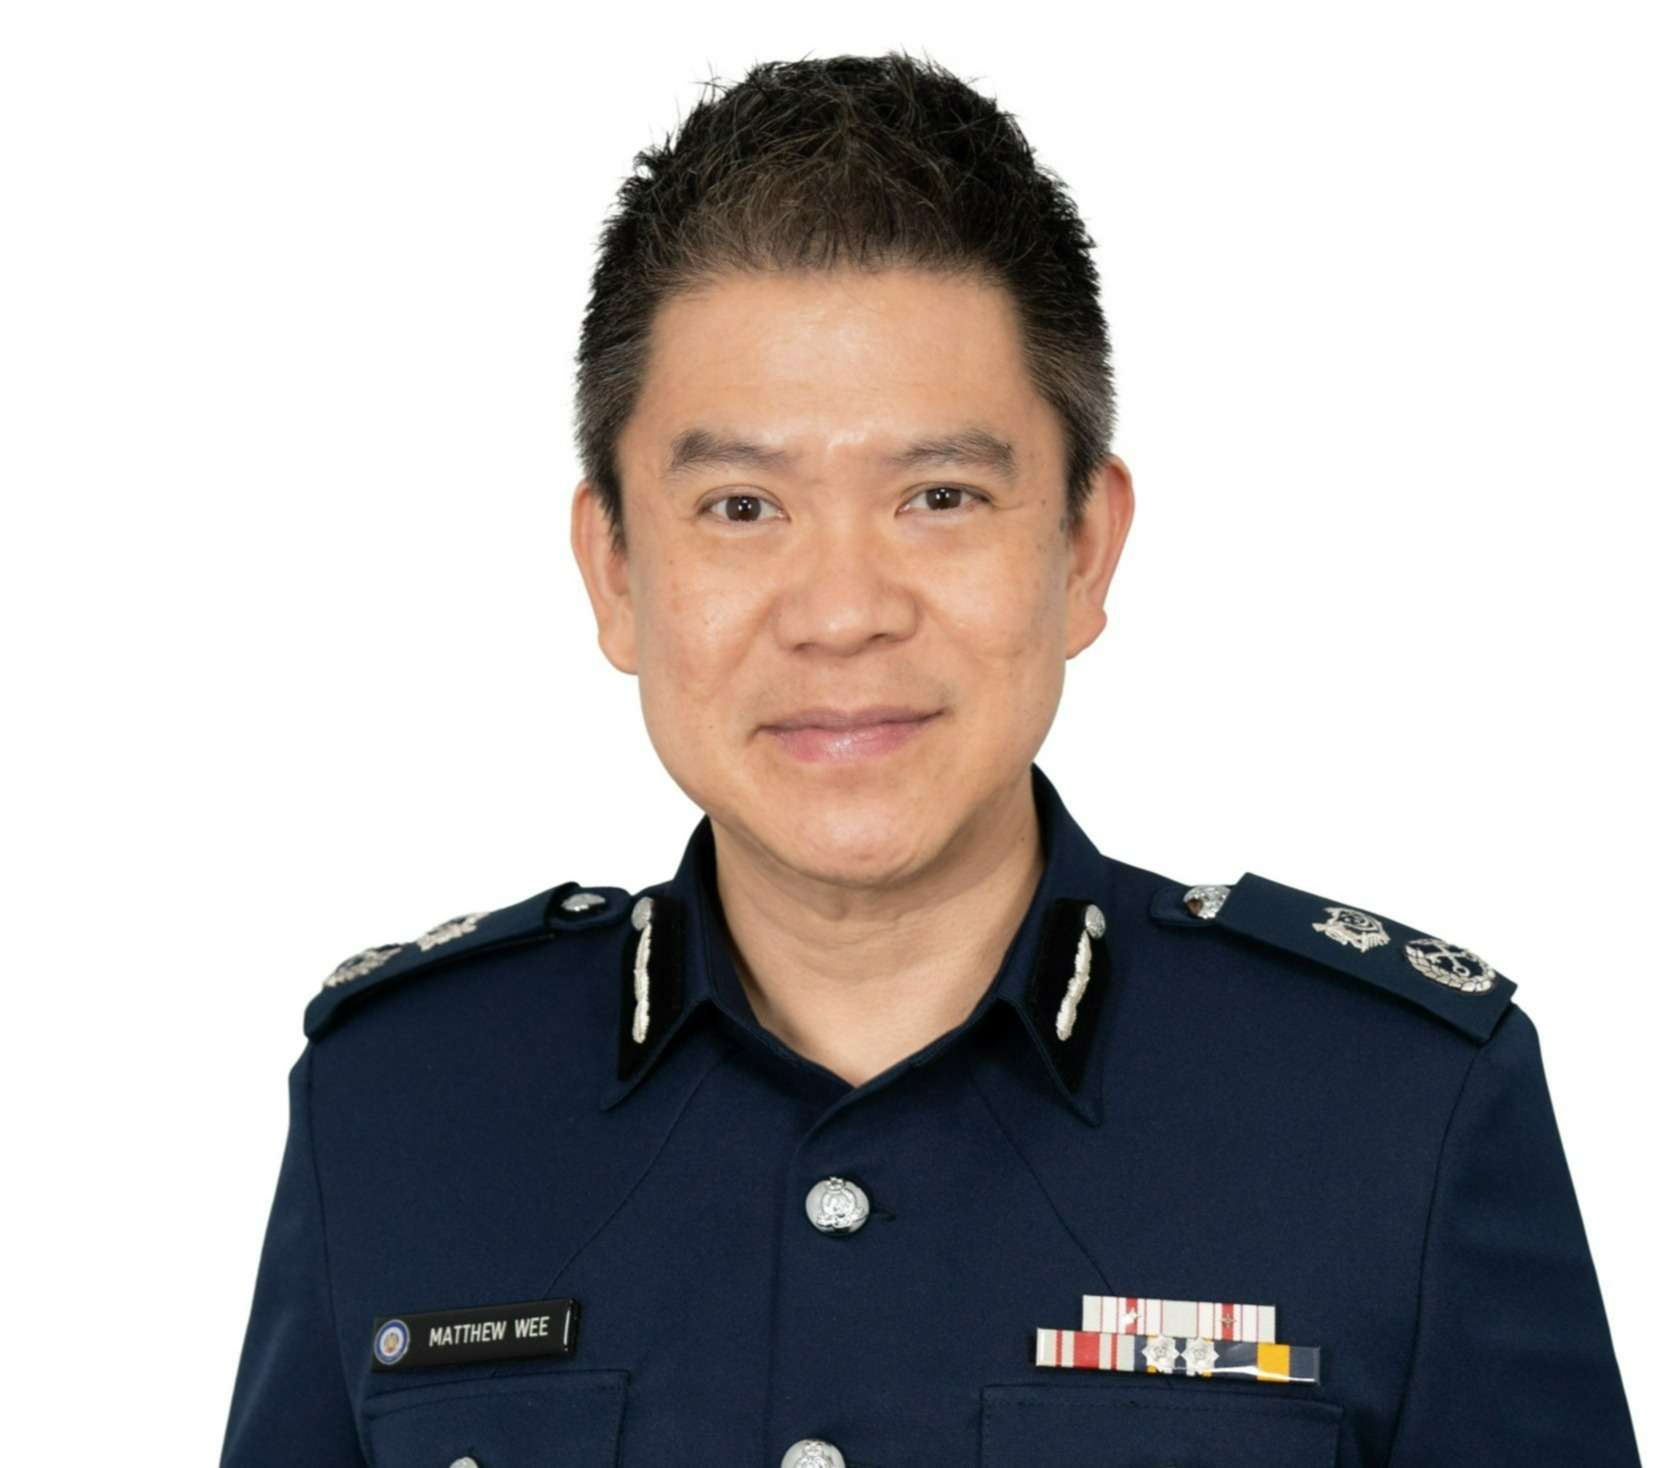 Mr Matthew Wee Yik Keong